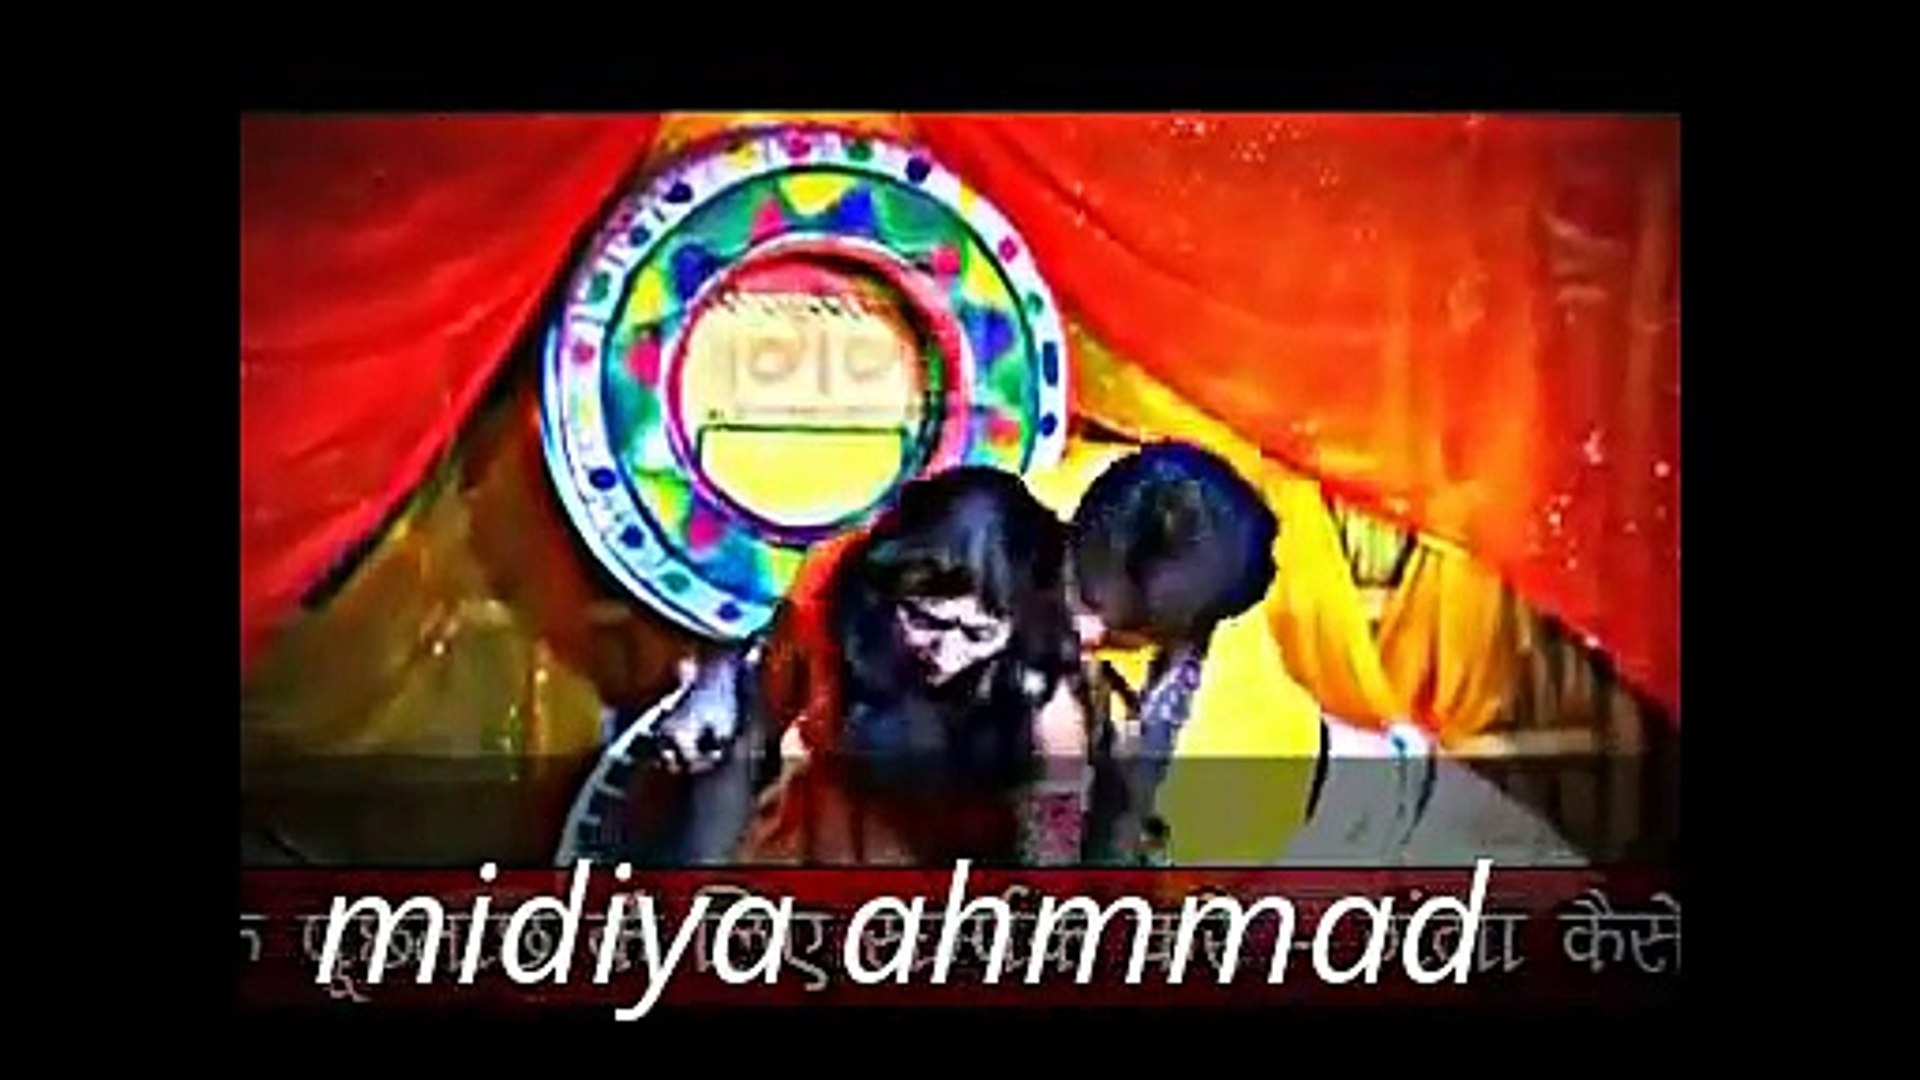 Pakistan Jatra Party Sex Video - new hot pakistani hot jatra video by pakistani video song - video  Dailymotion